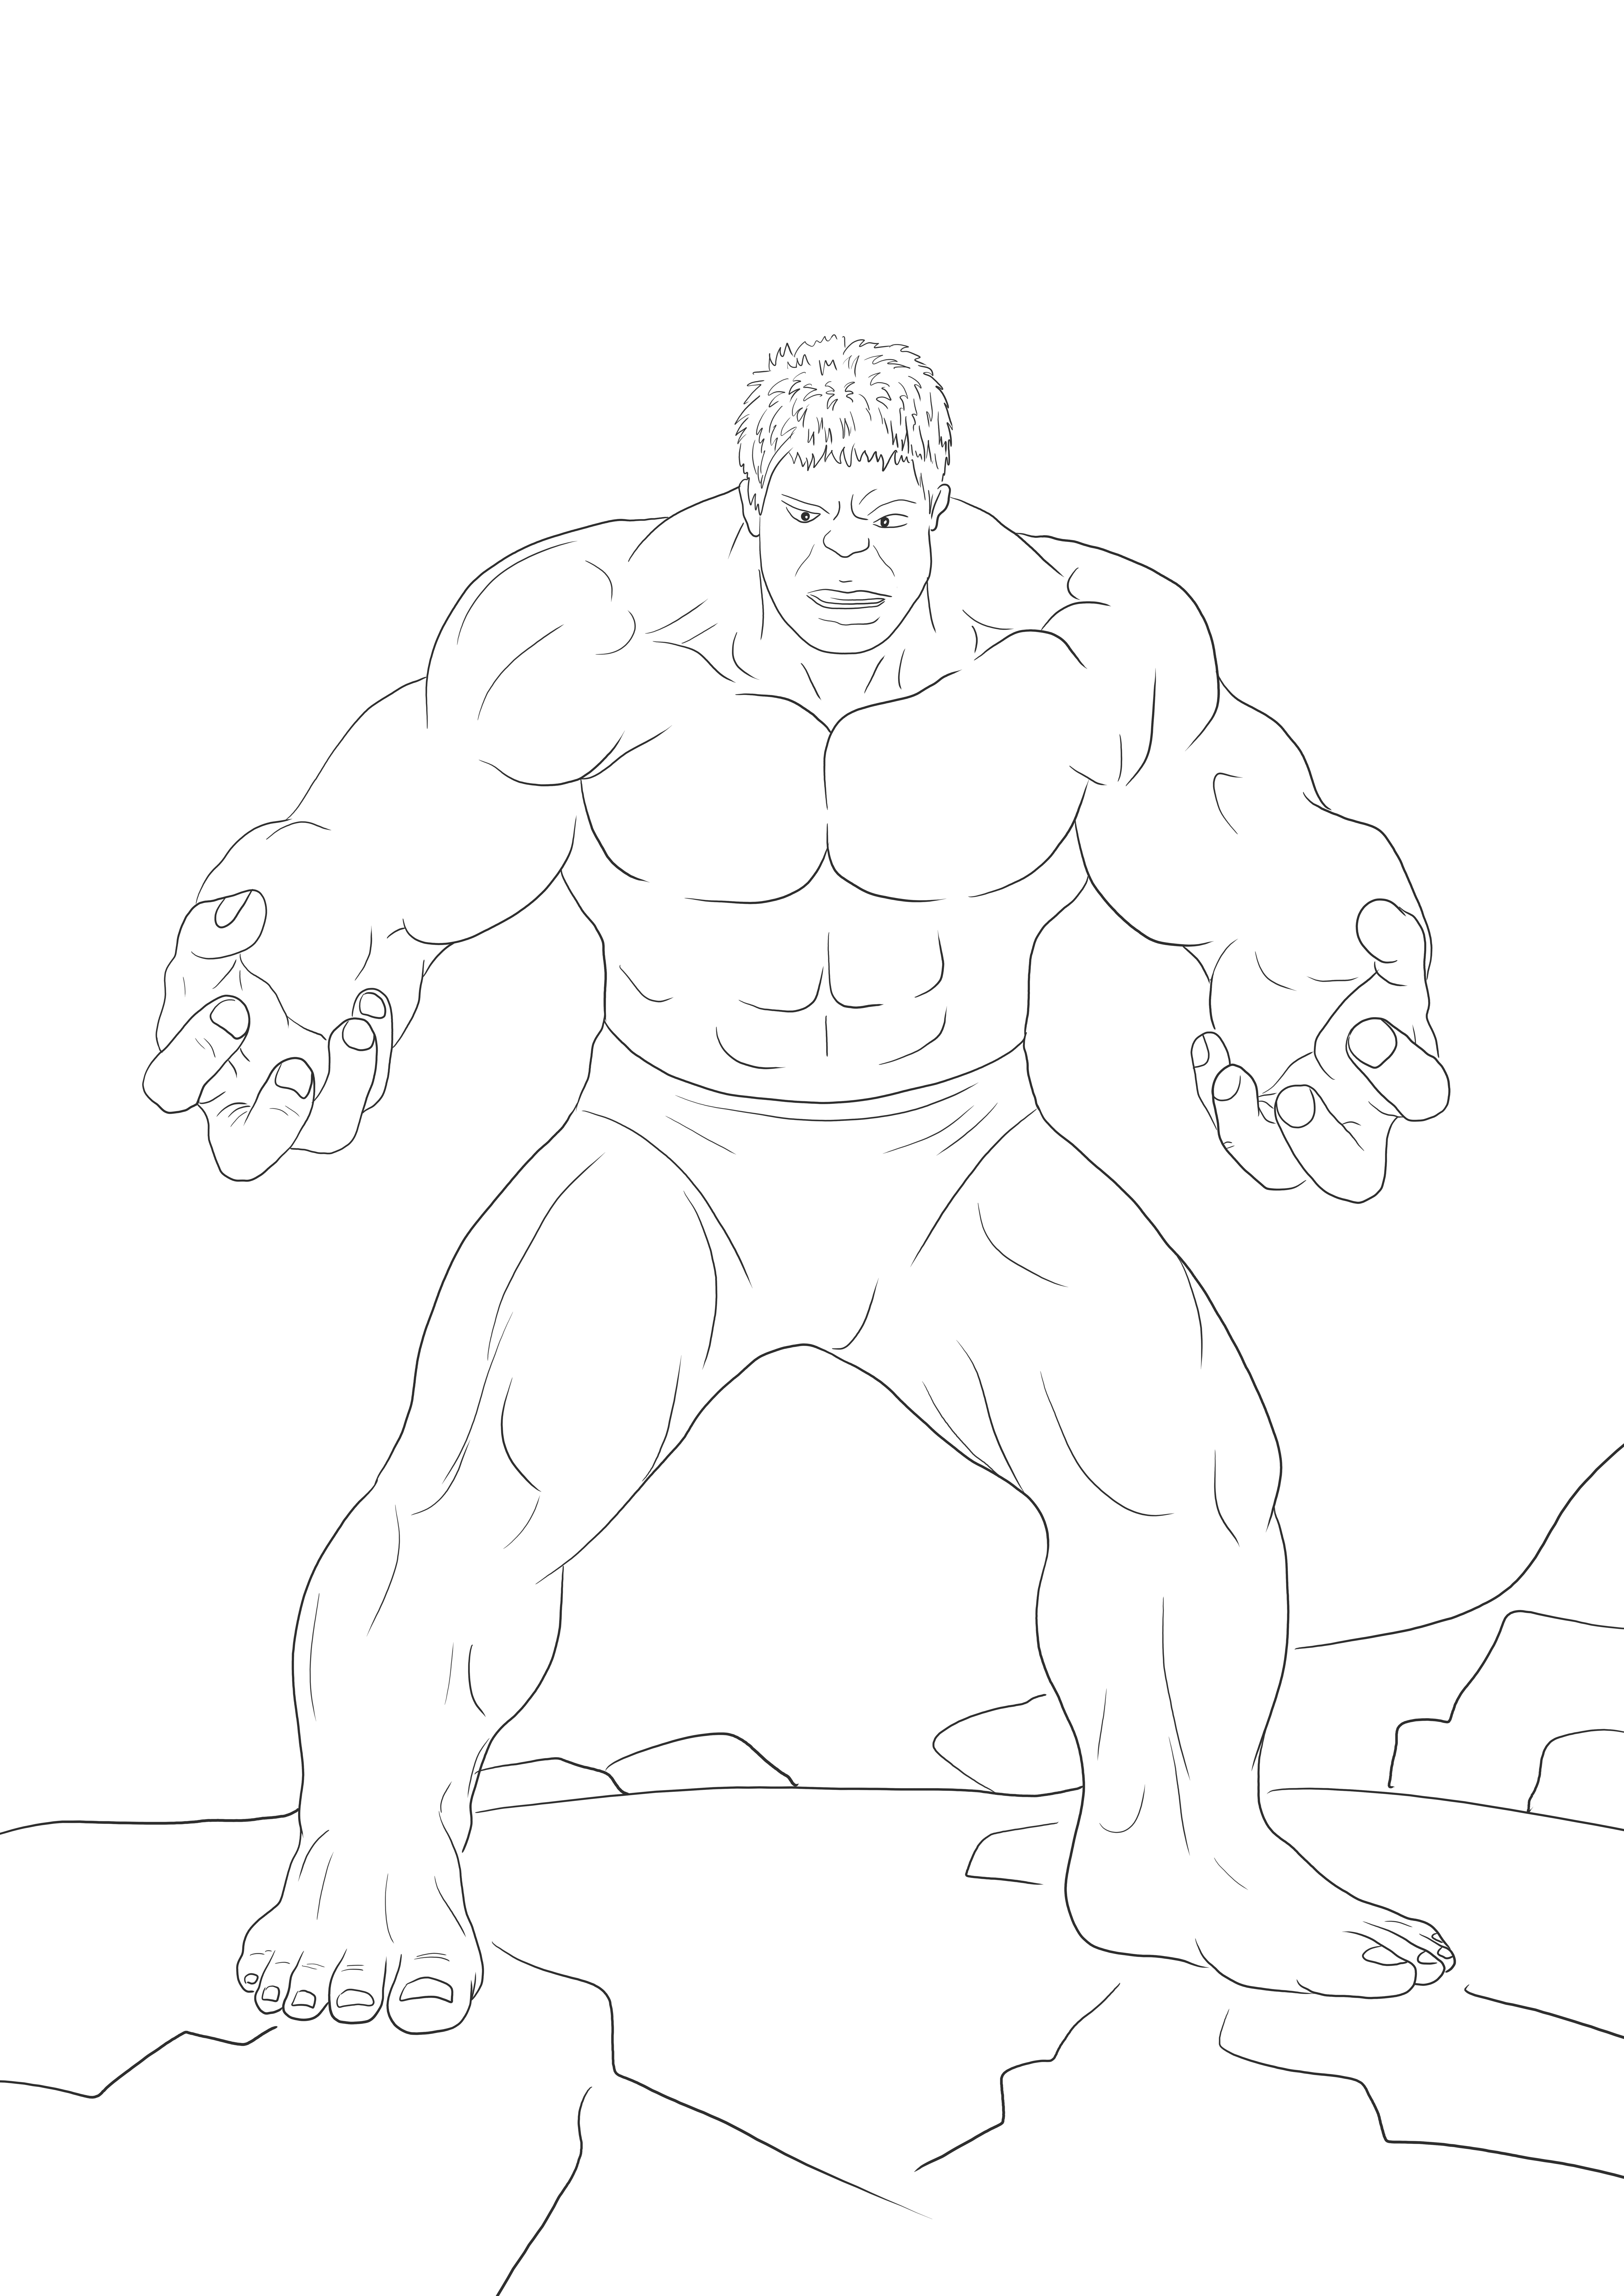 Cetakan gratis Hulk yang marah untuk diwarnai untuk diajarkan tentang pahlawan Marvel